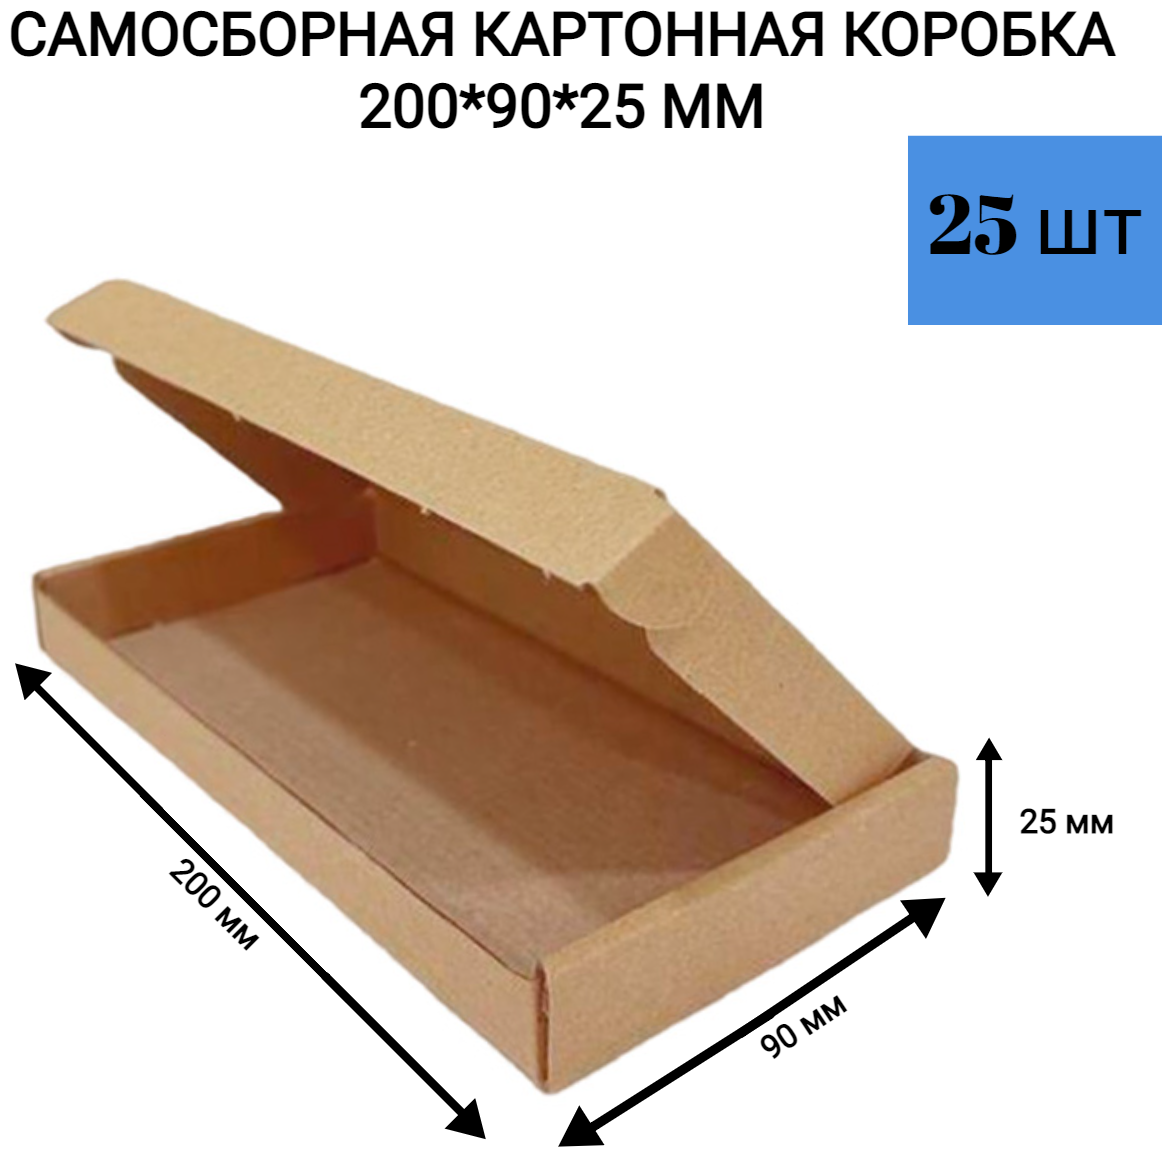 Самосборная картонная коробка 200*90*25 мм. 25 шт